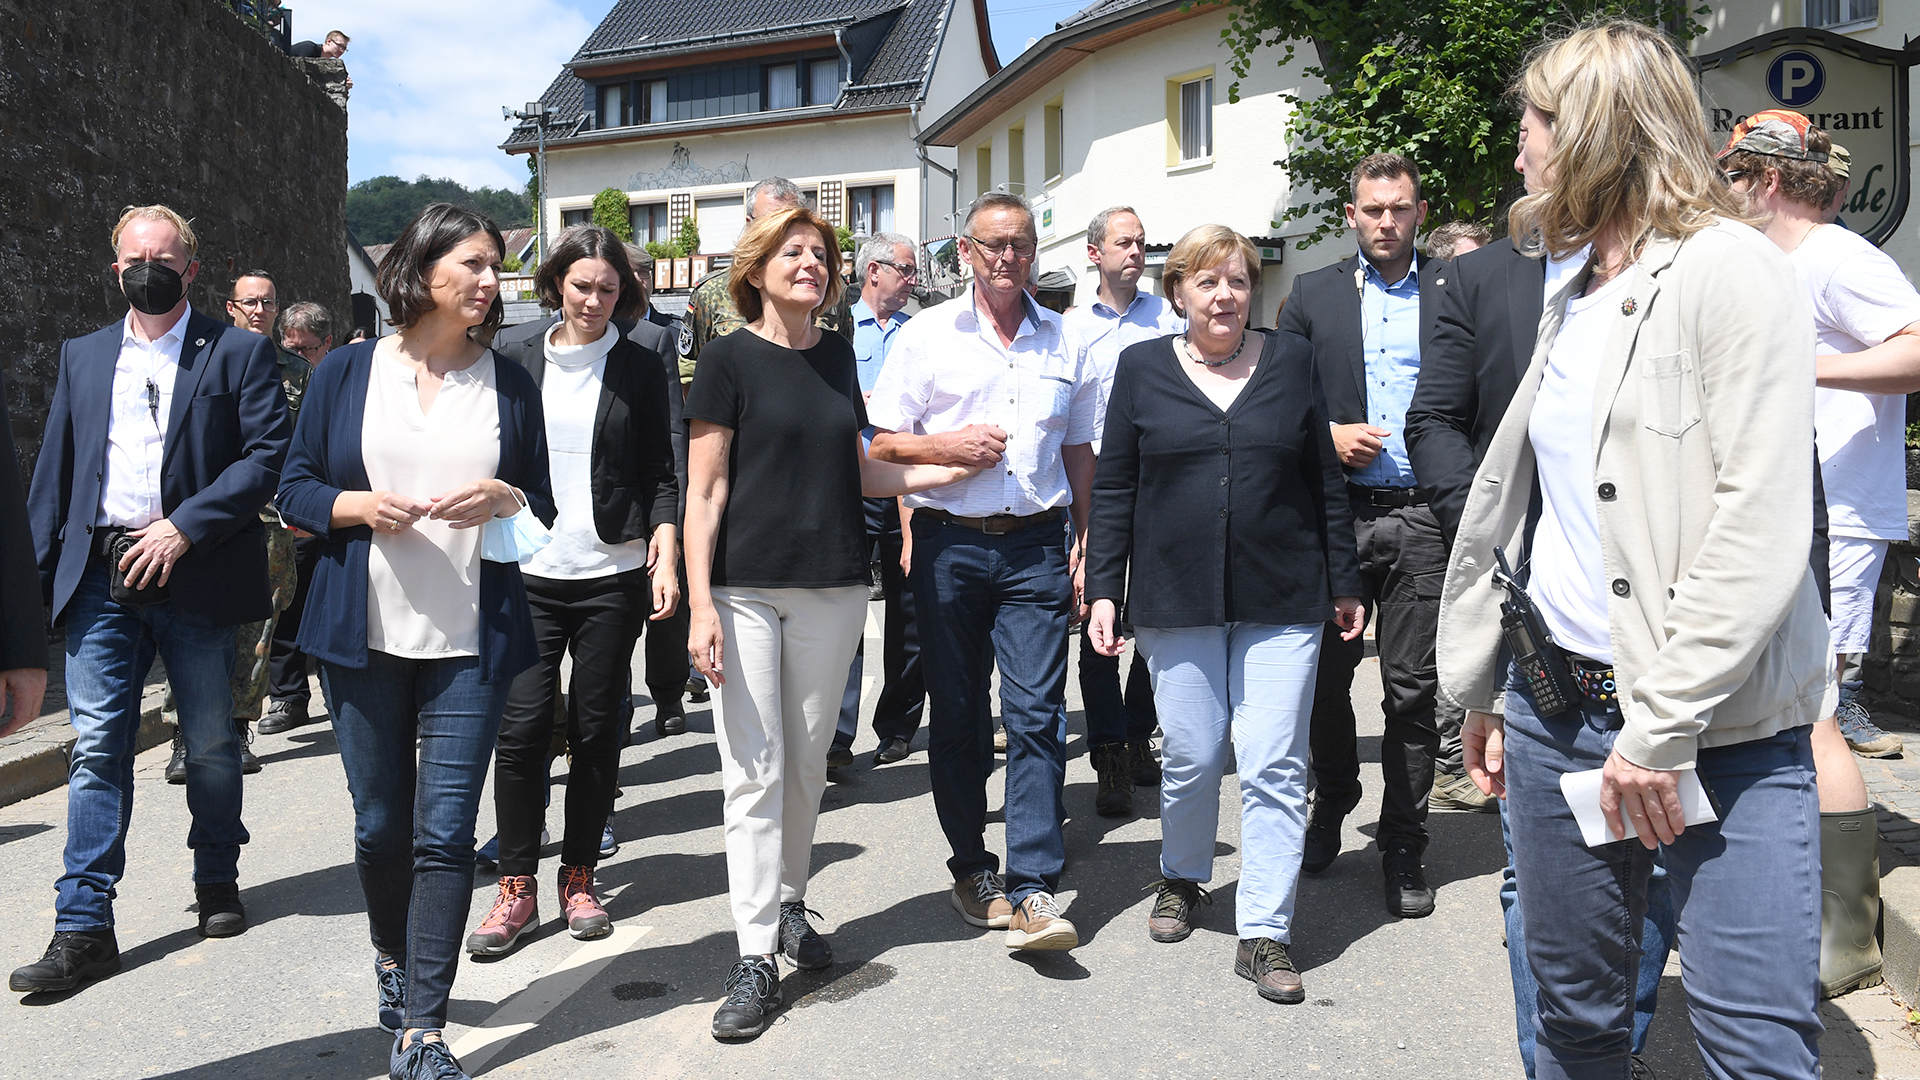 Kanzlerin Angela Merkel beim Gang durch die Ortsgemeinde Schuld zusammen mit Ortsbürgermeister Helmut Lussi und der rheinland-pfälzischen Ministerpräsidentin Malu Dreyer.